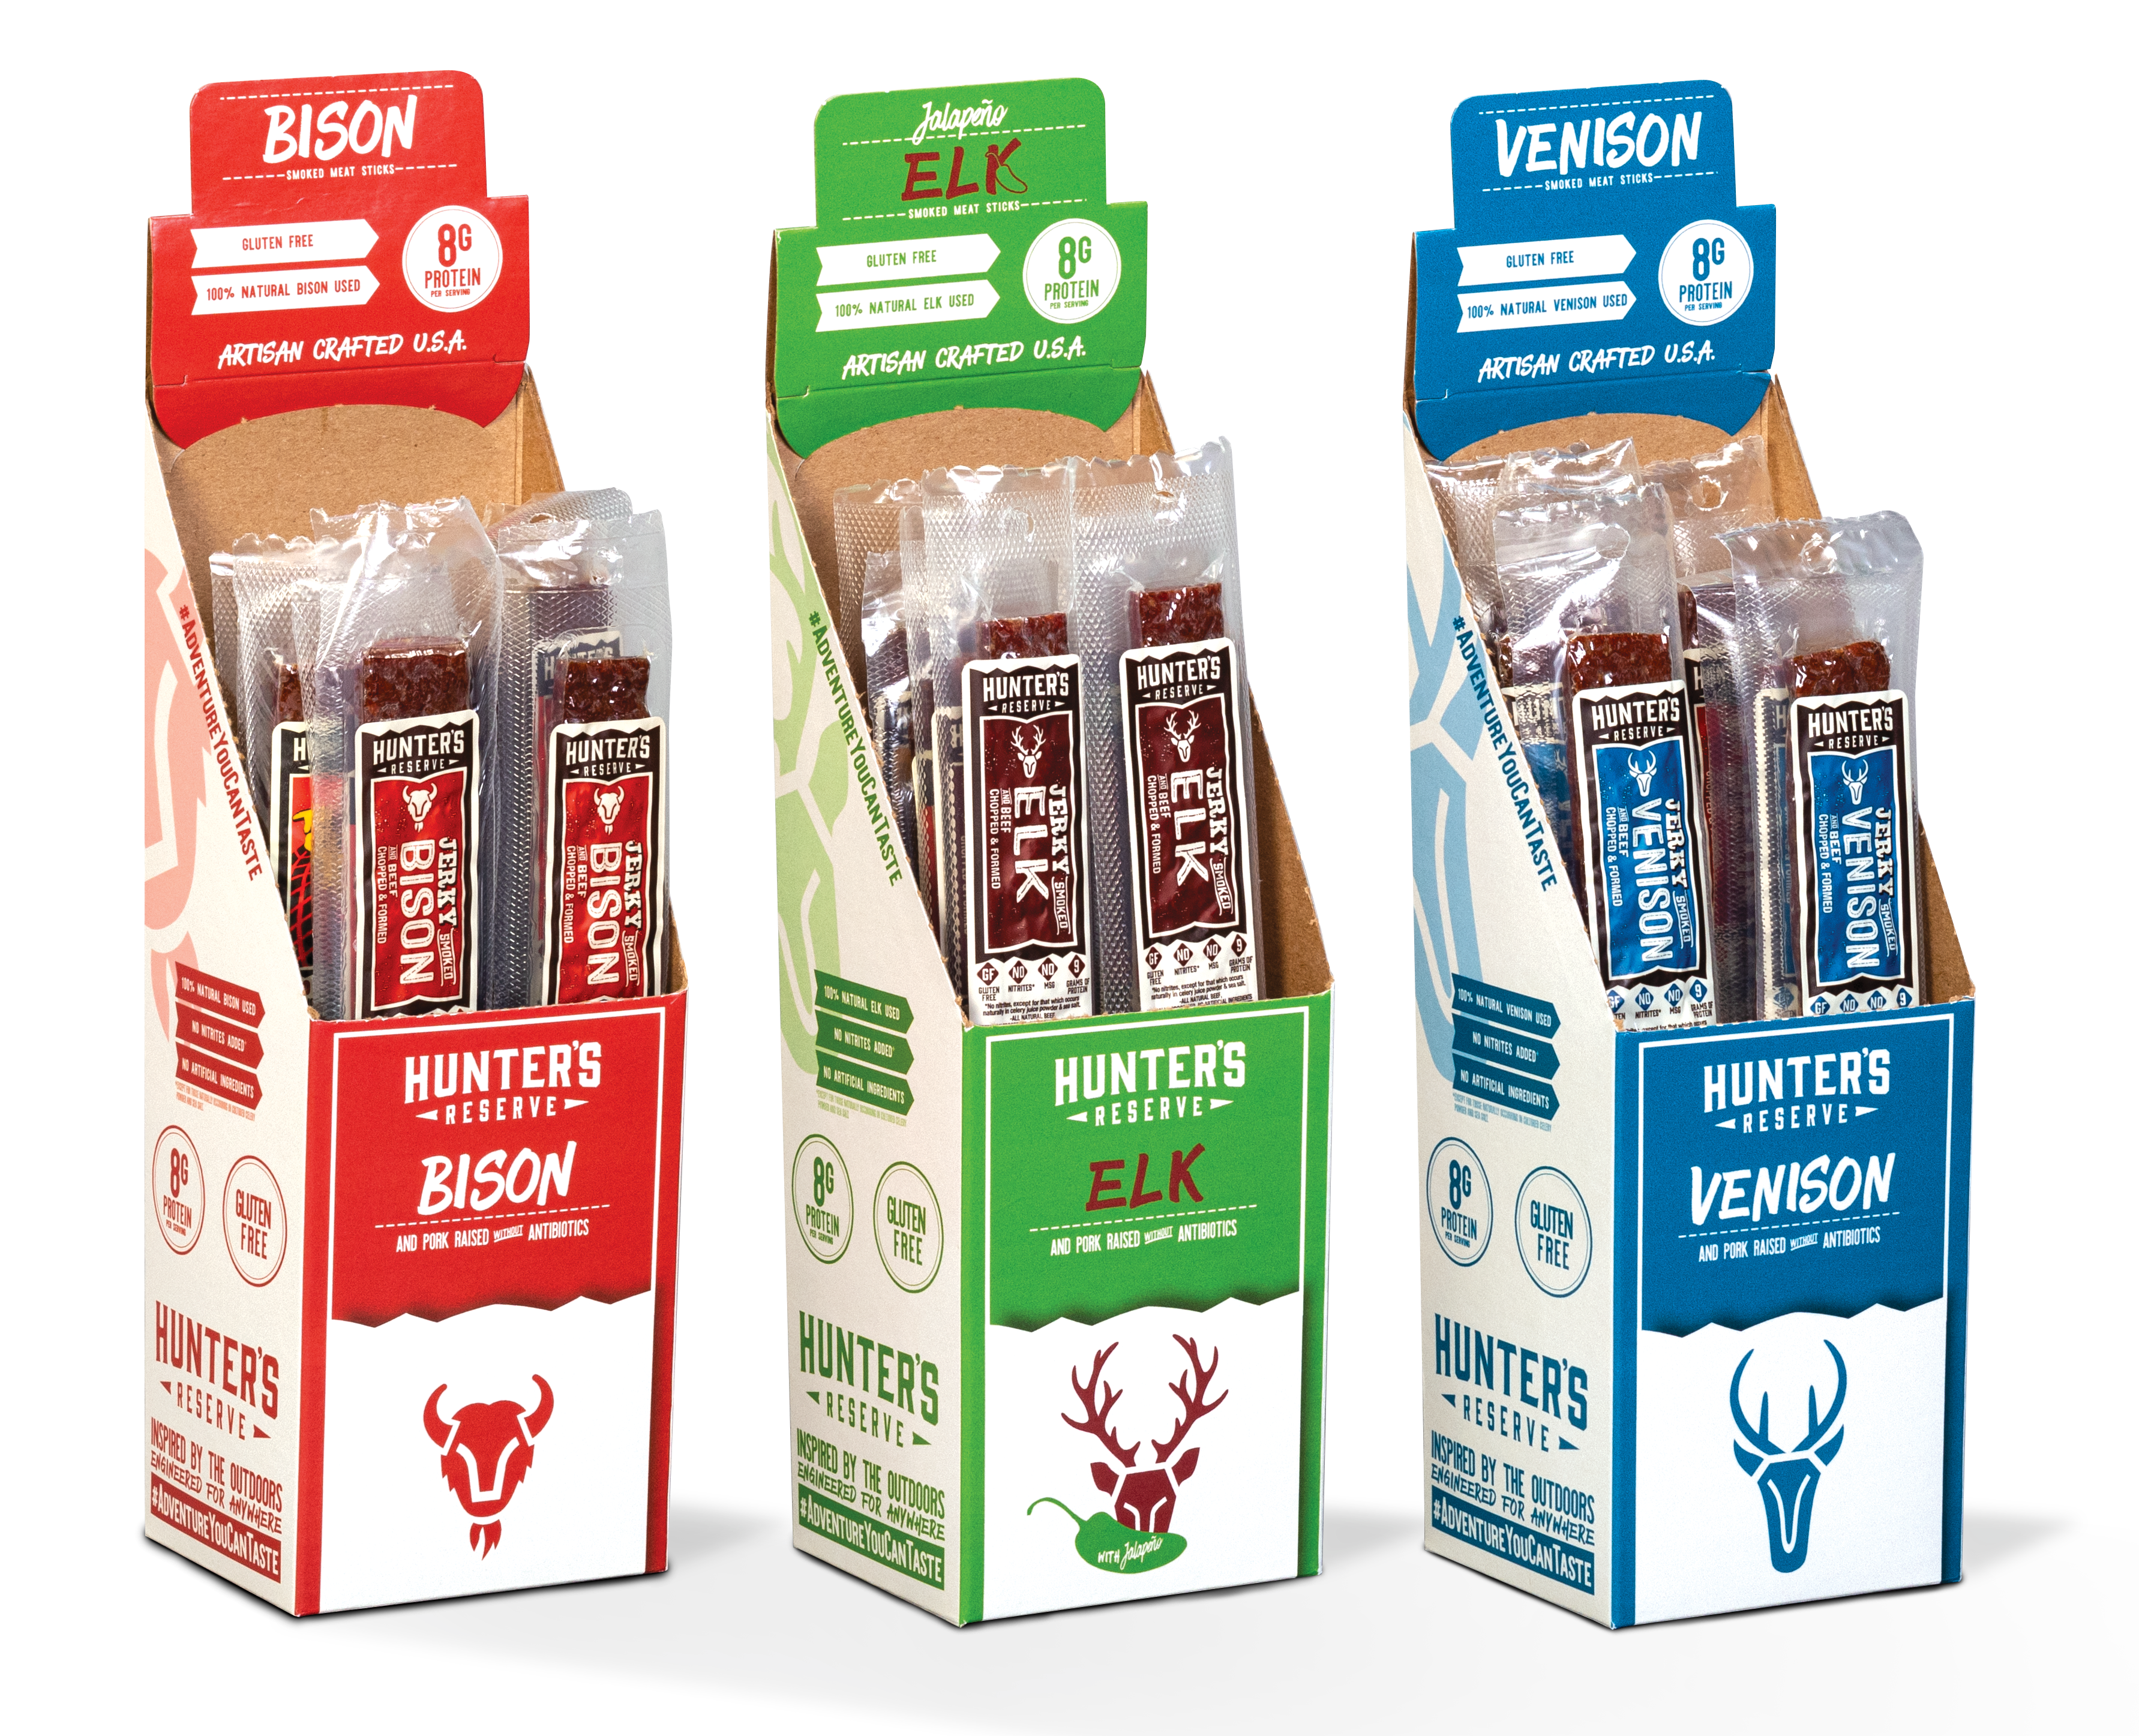 Hunter's Reserve Jerky packaging